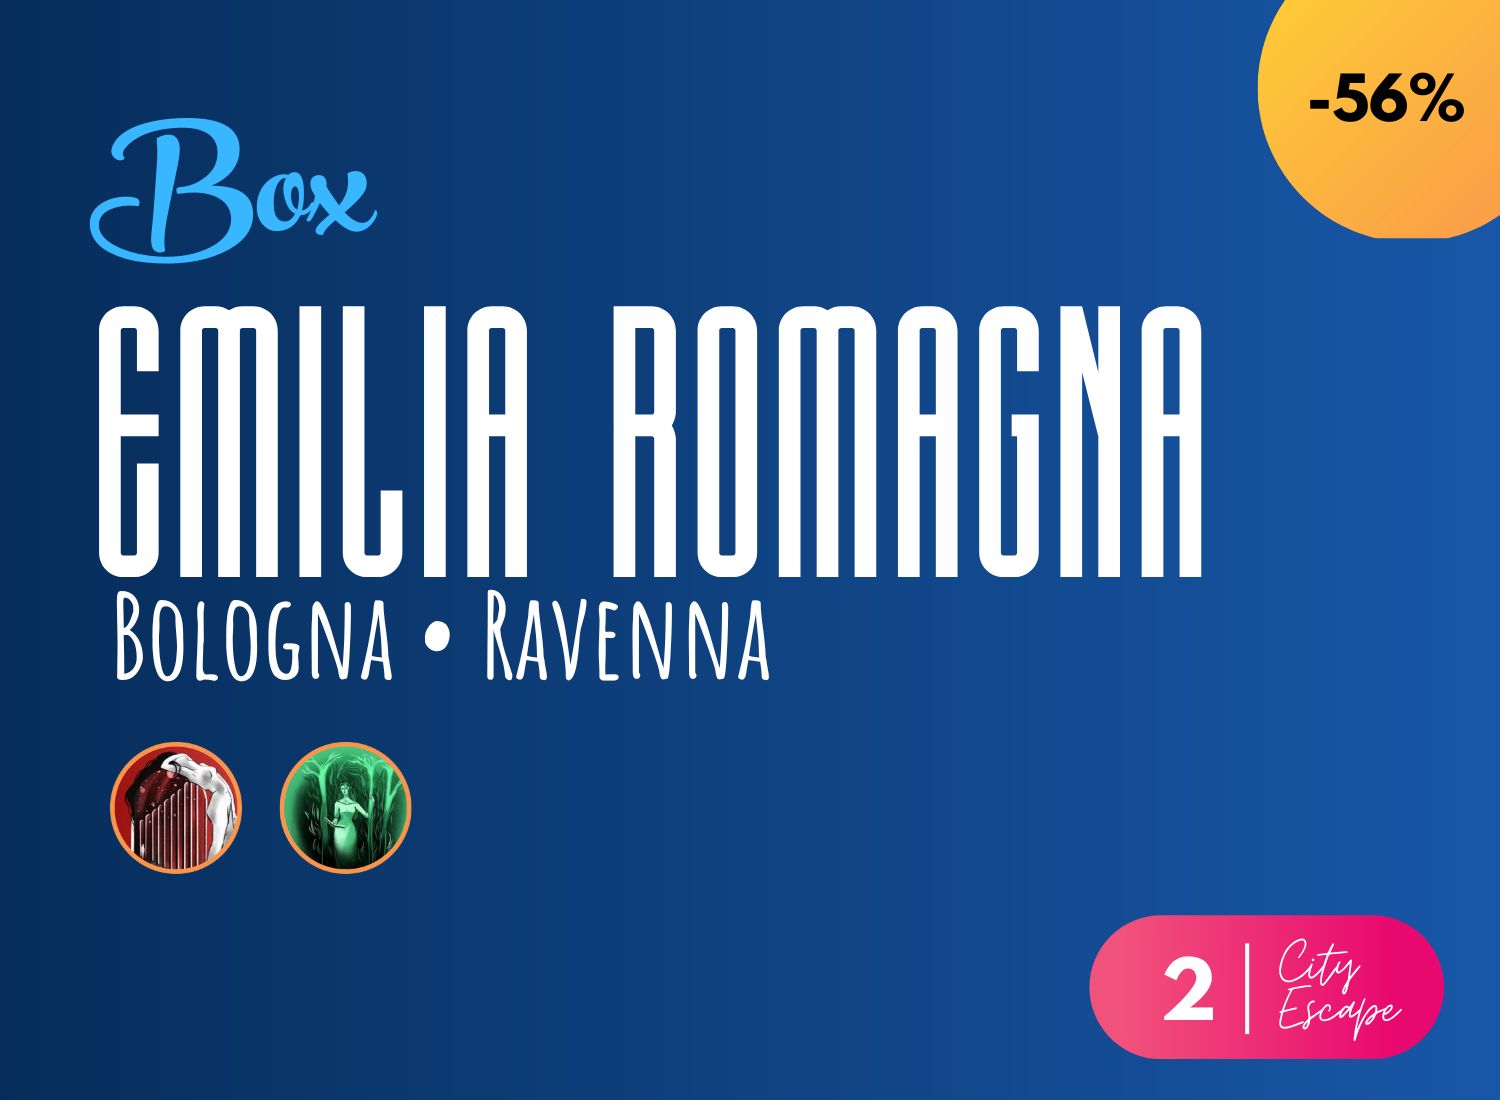 BOX Emilia Romagna